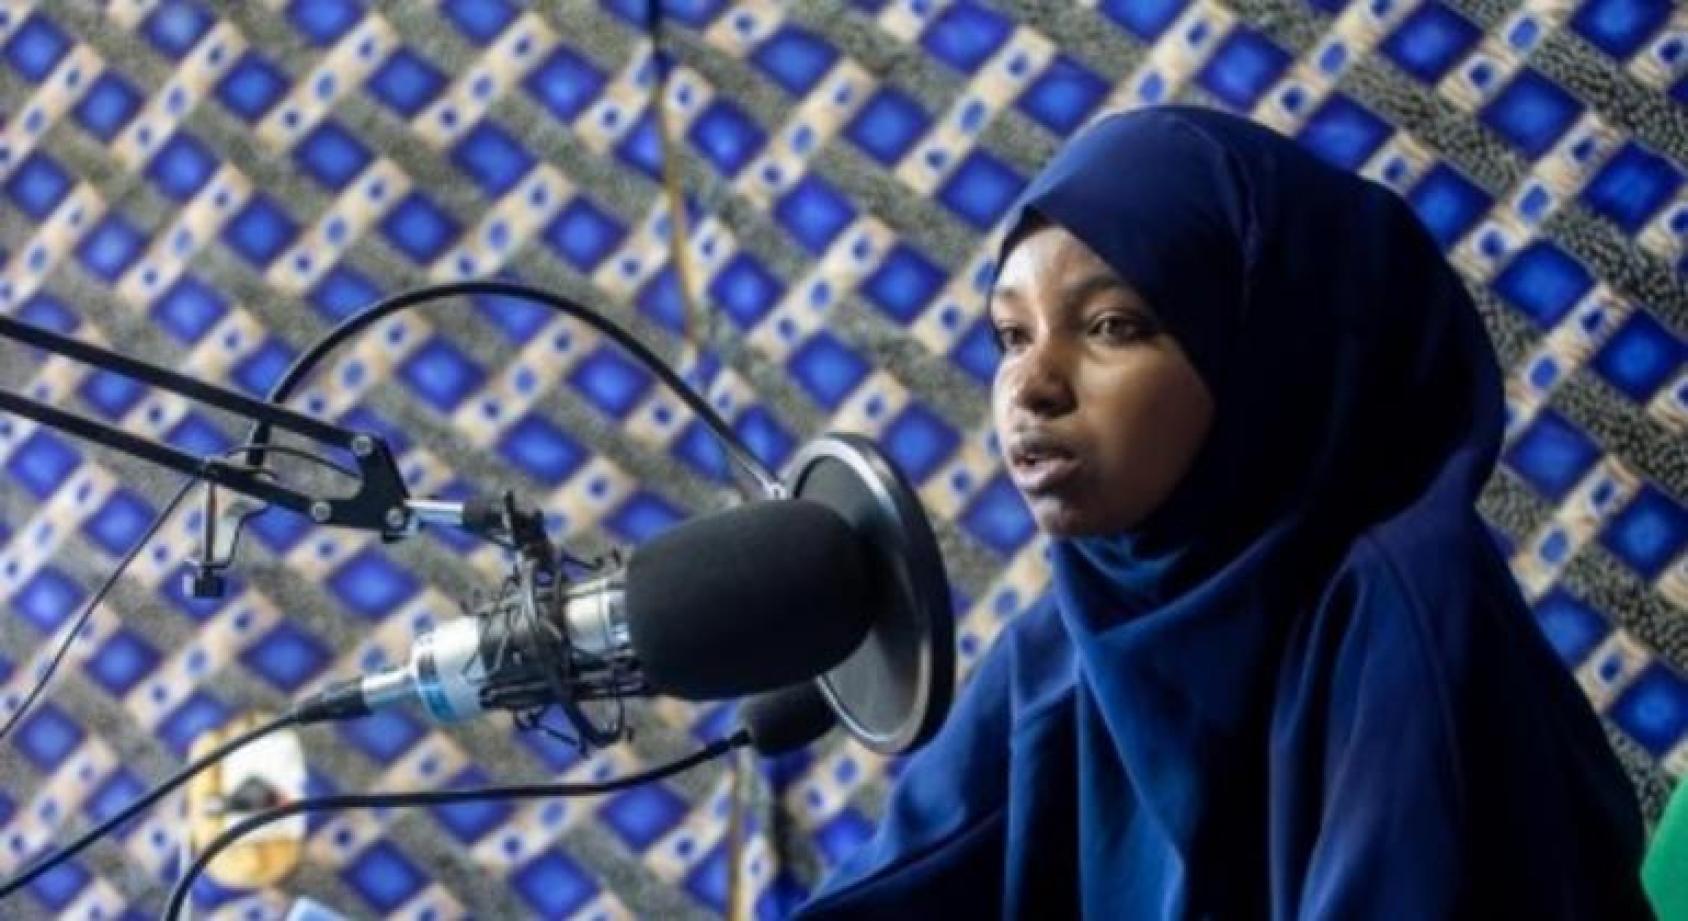 Сомалийка сидит перед профессиональным радио микрофоном и о чем-то рассказывает